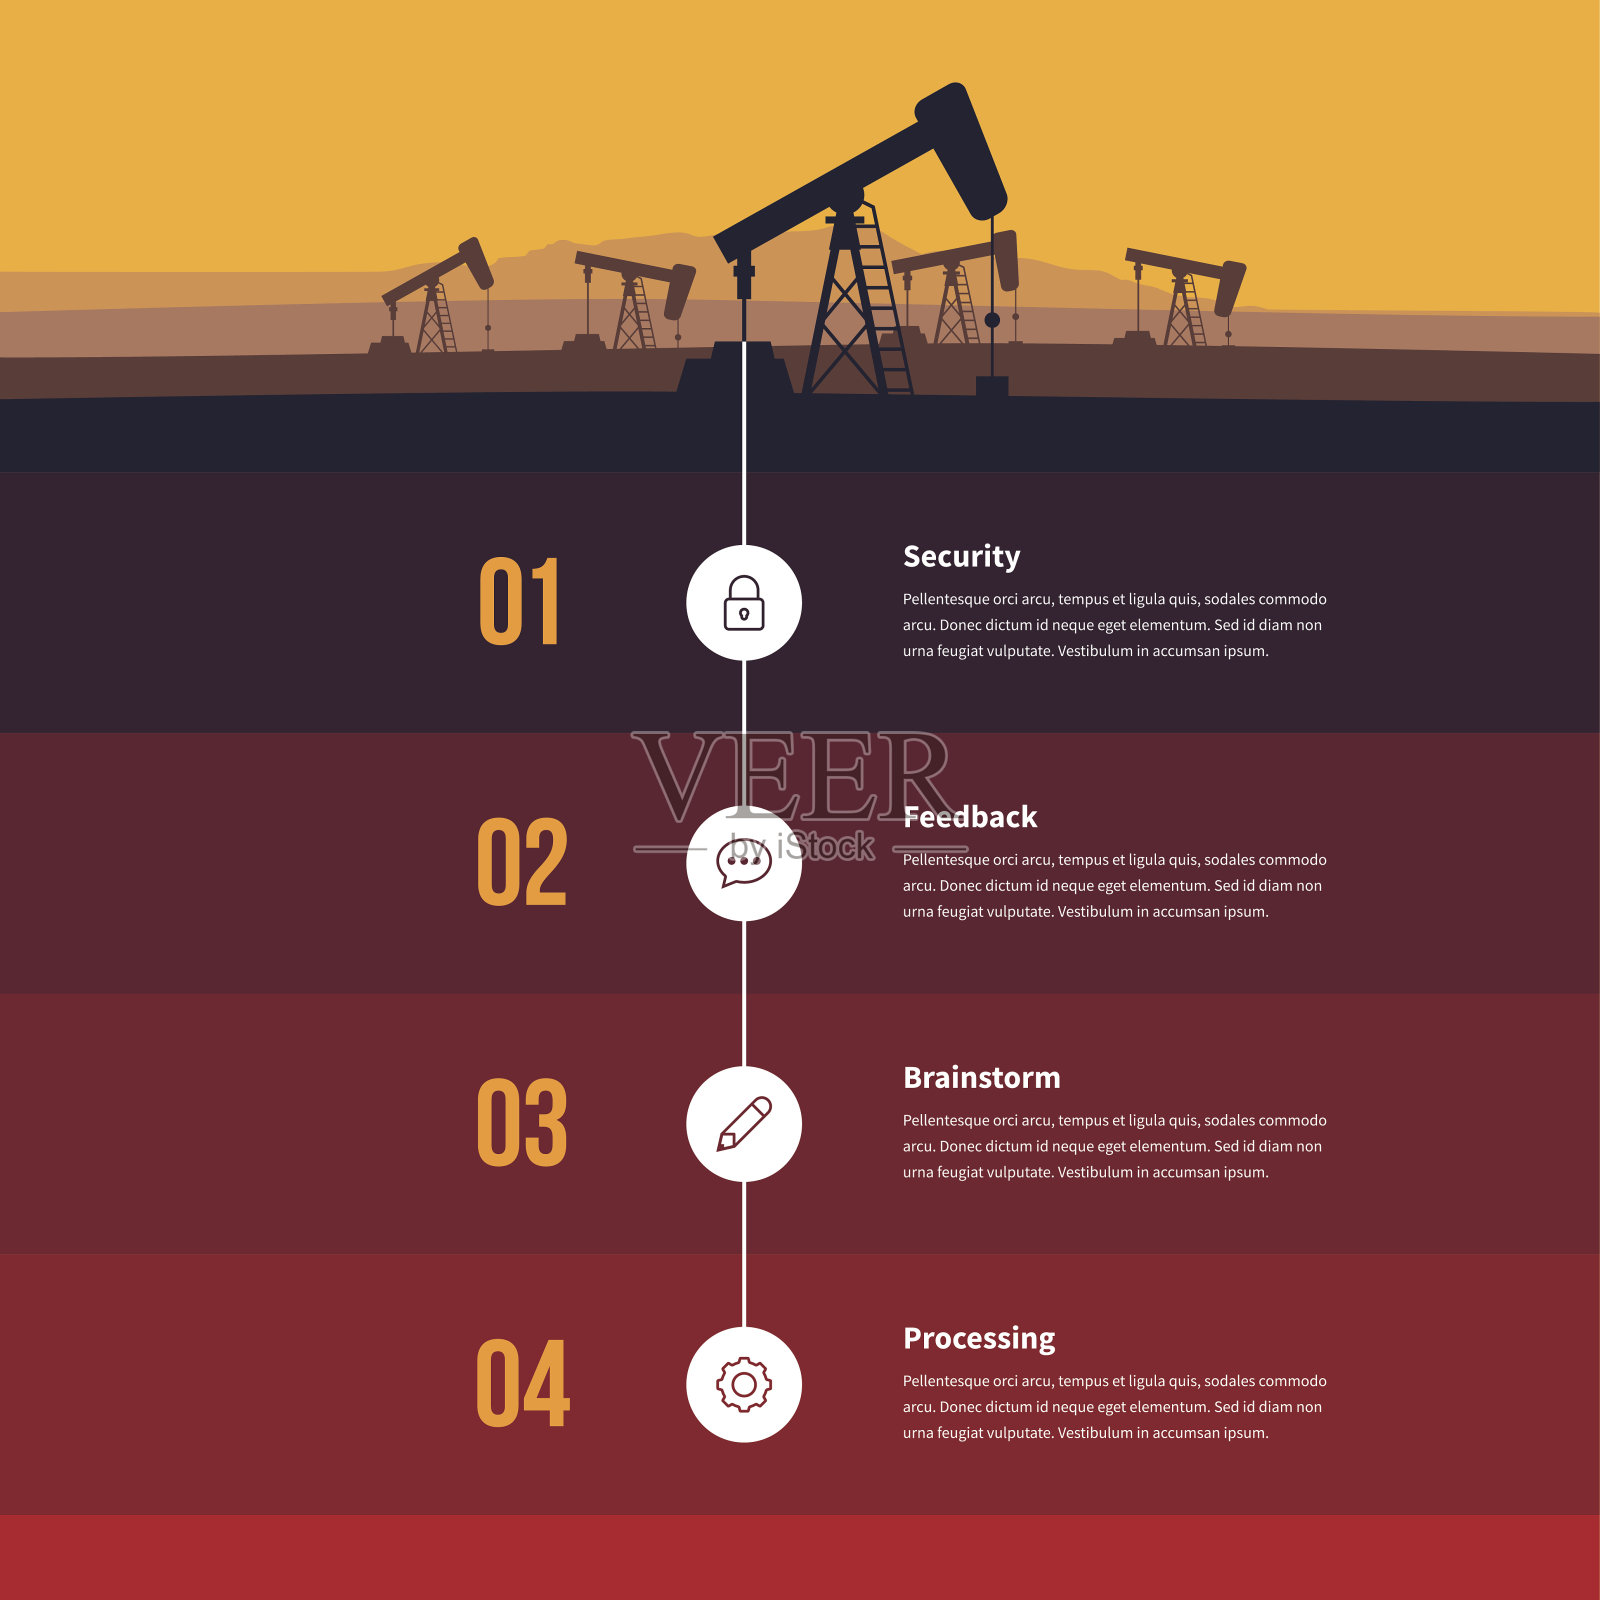 化石能源信息插画图片素材